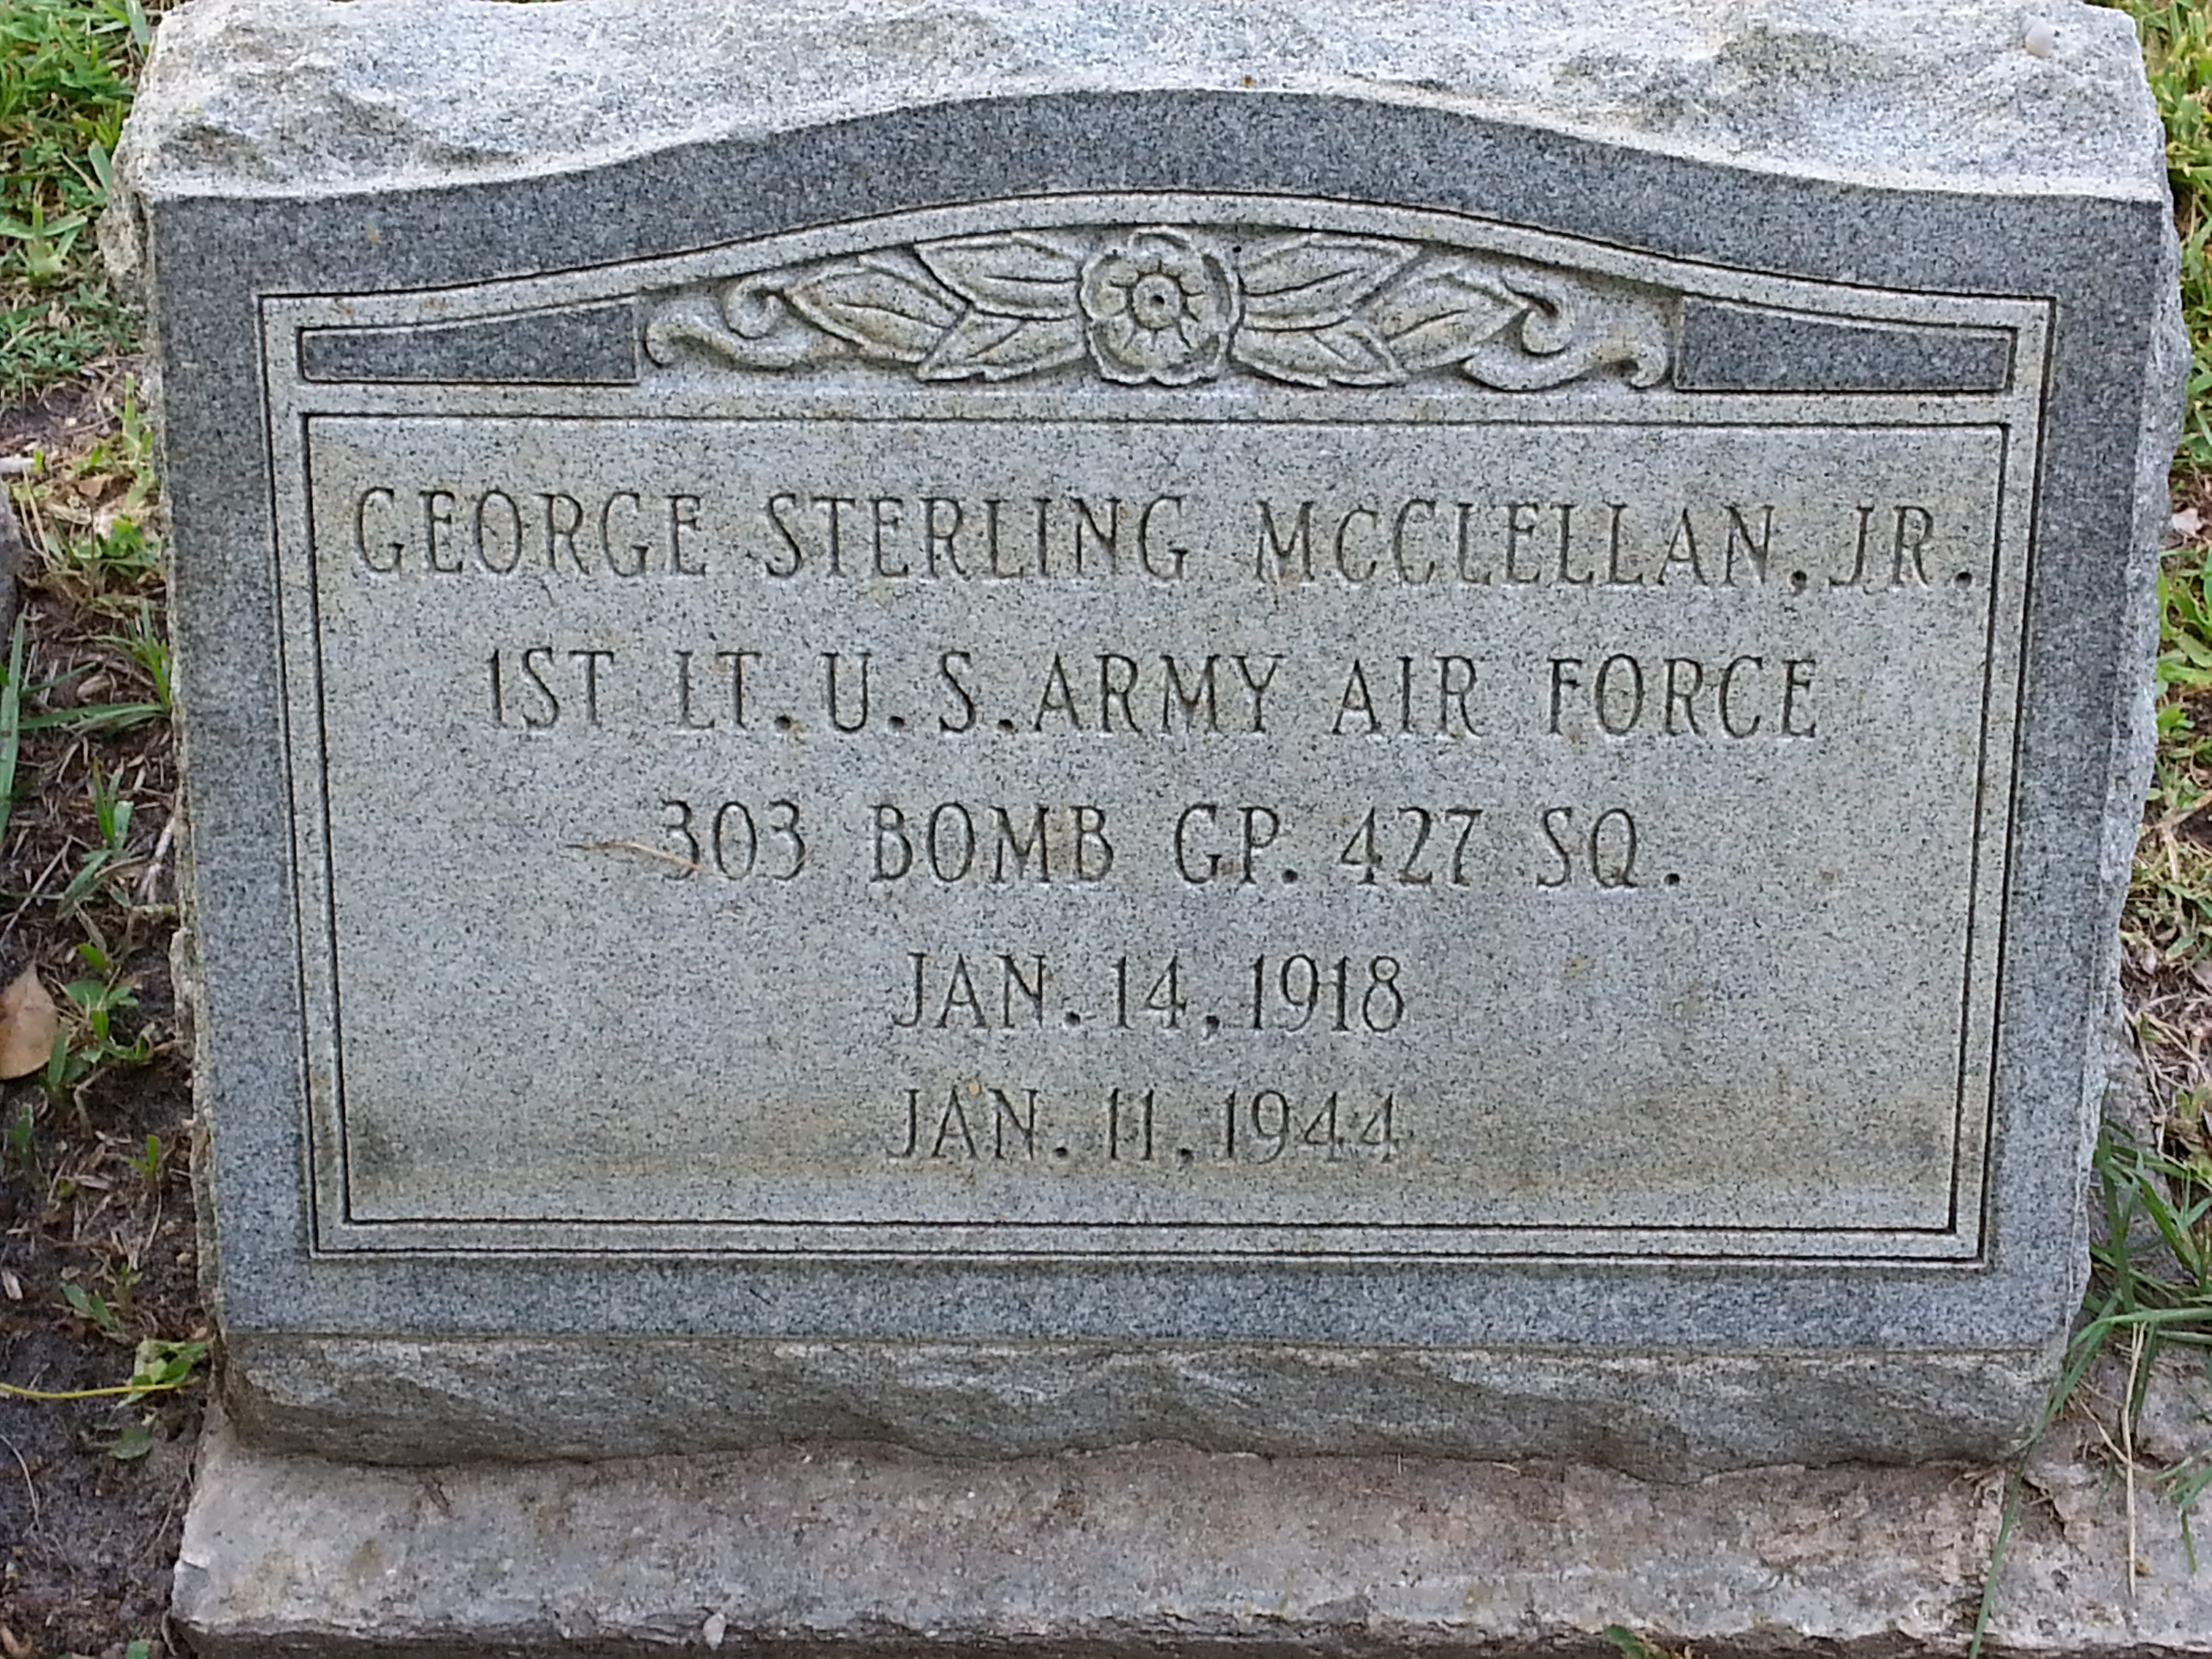 George Sterling McClellan, Jr